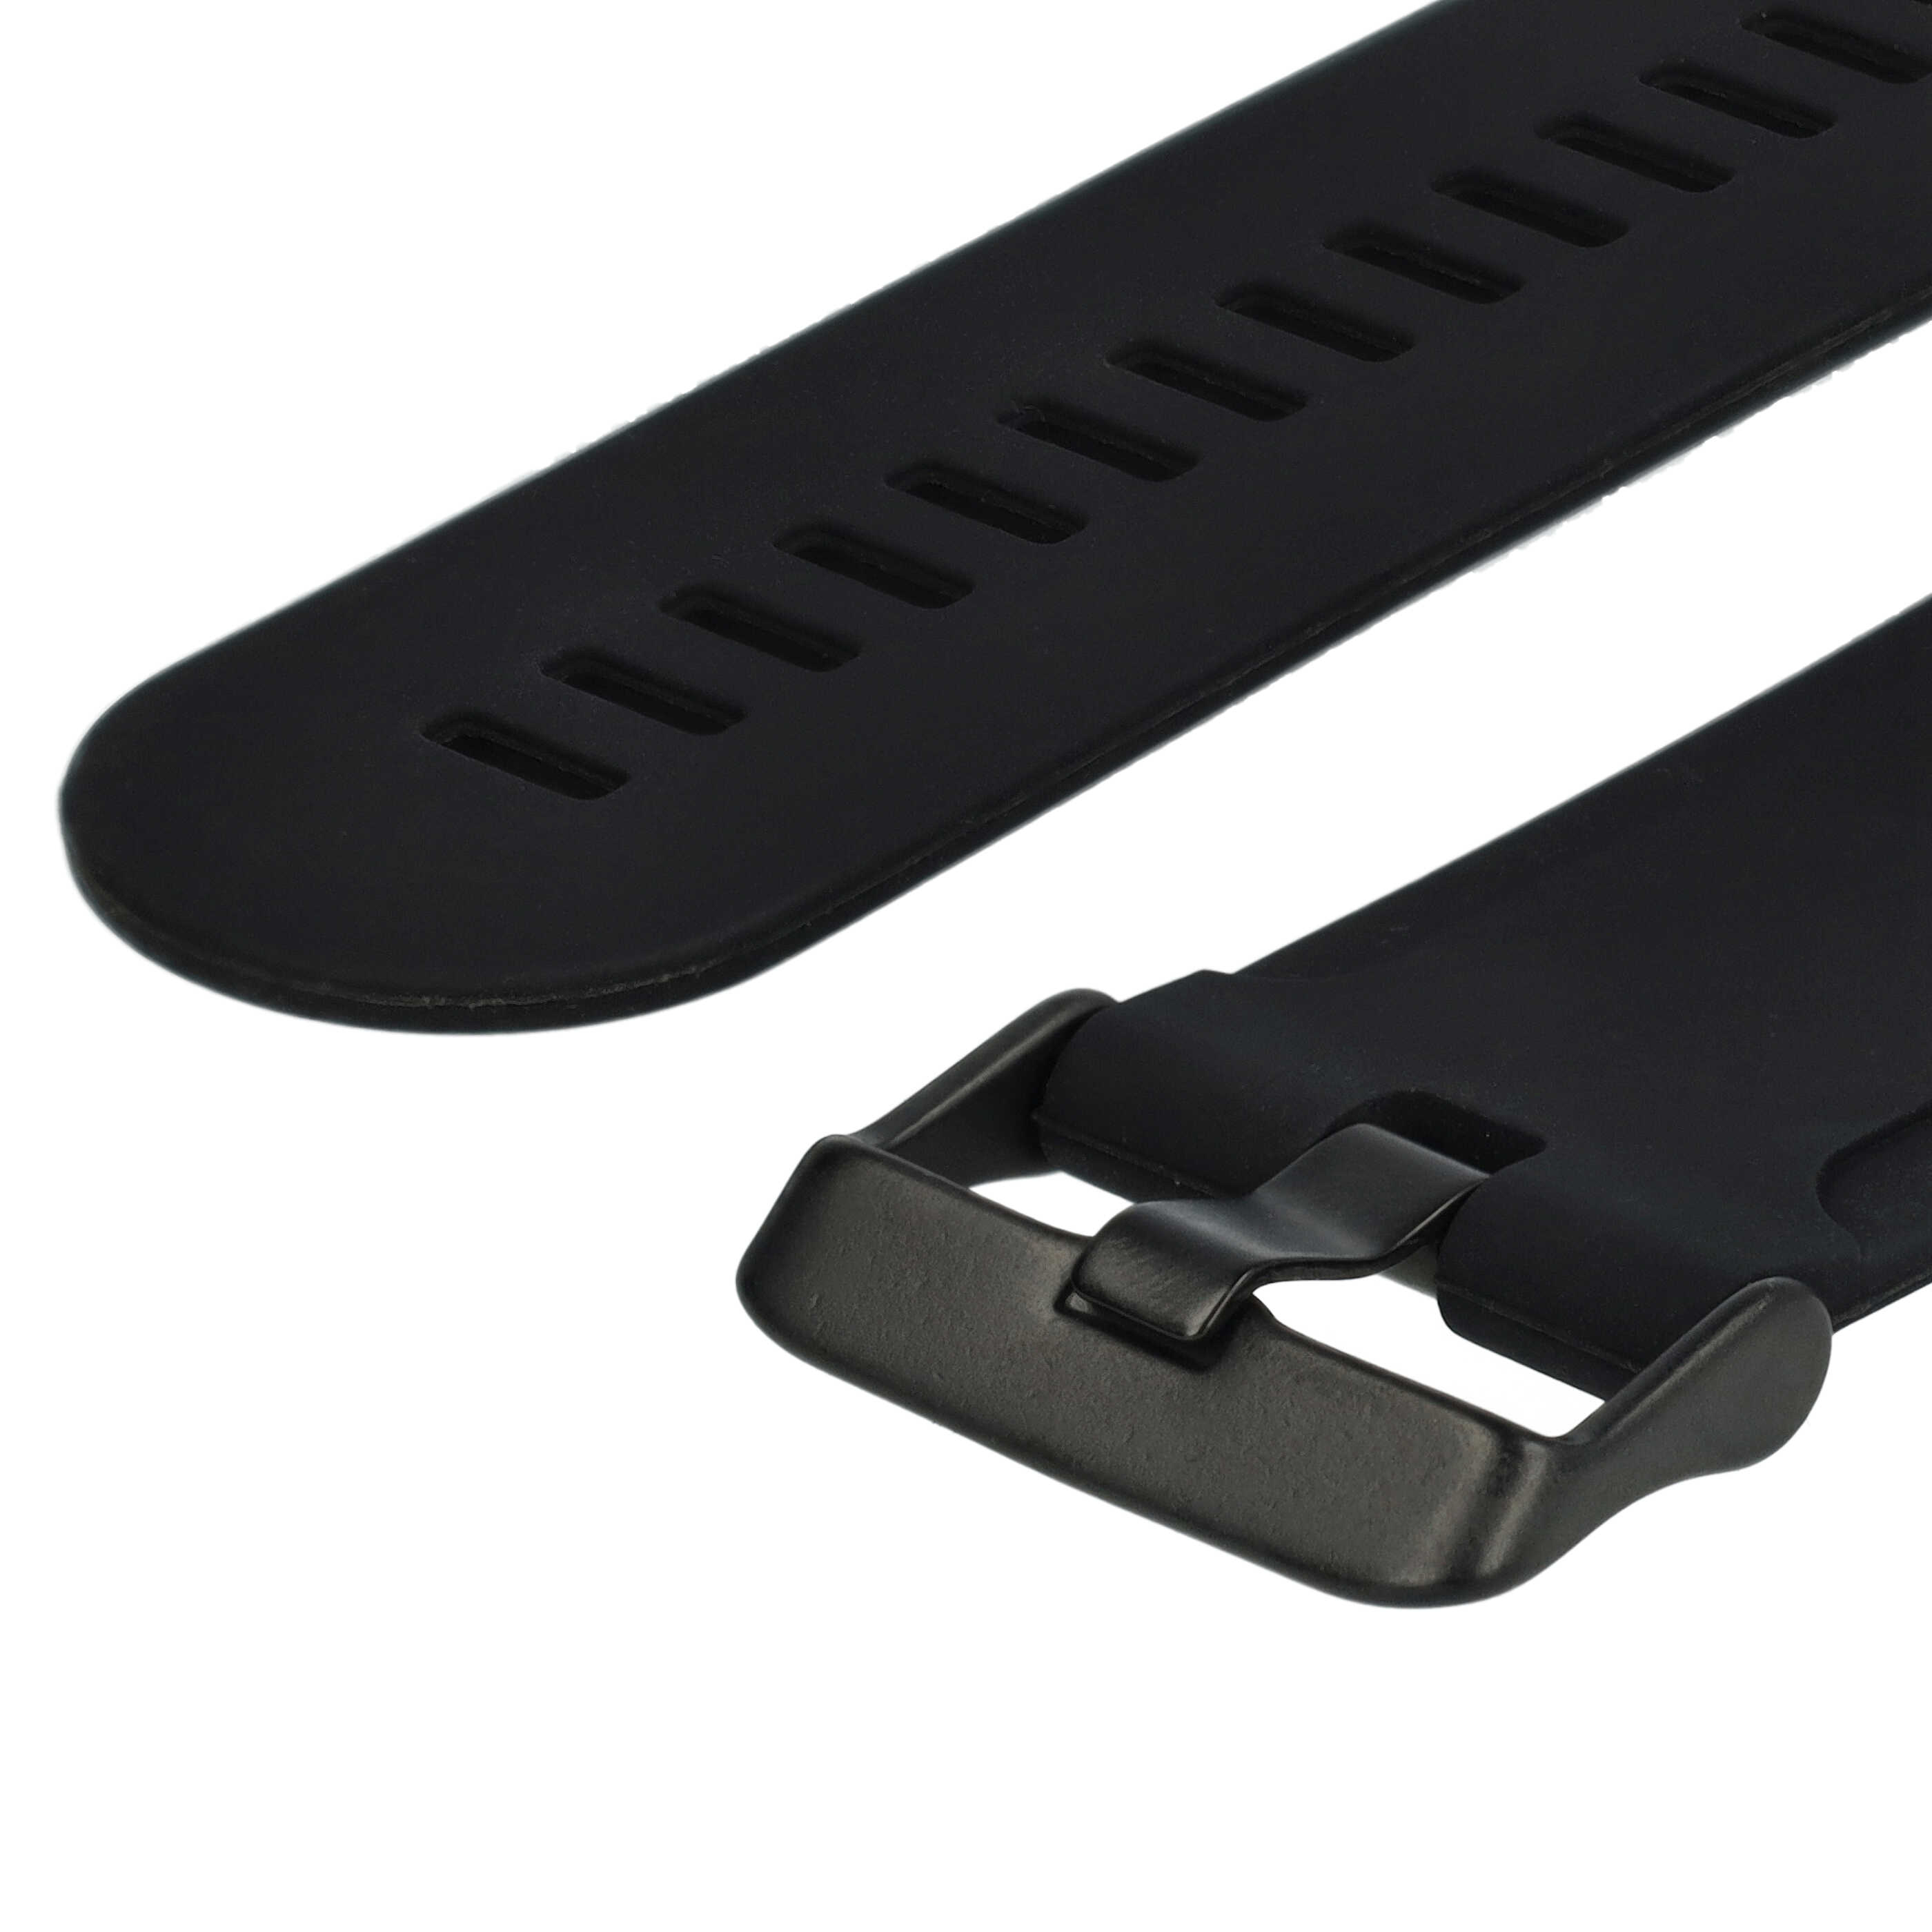 Pasek L do smartwatch Suunto - dł. 12,5cm + 8,5 cm, silikon, czarny